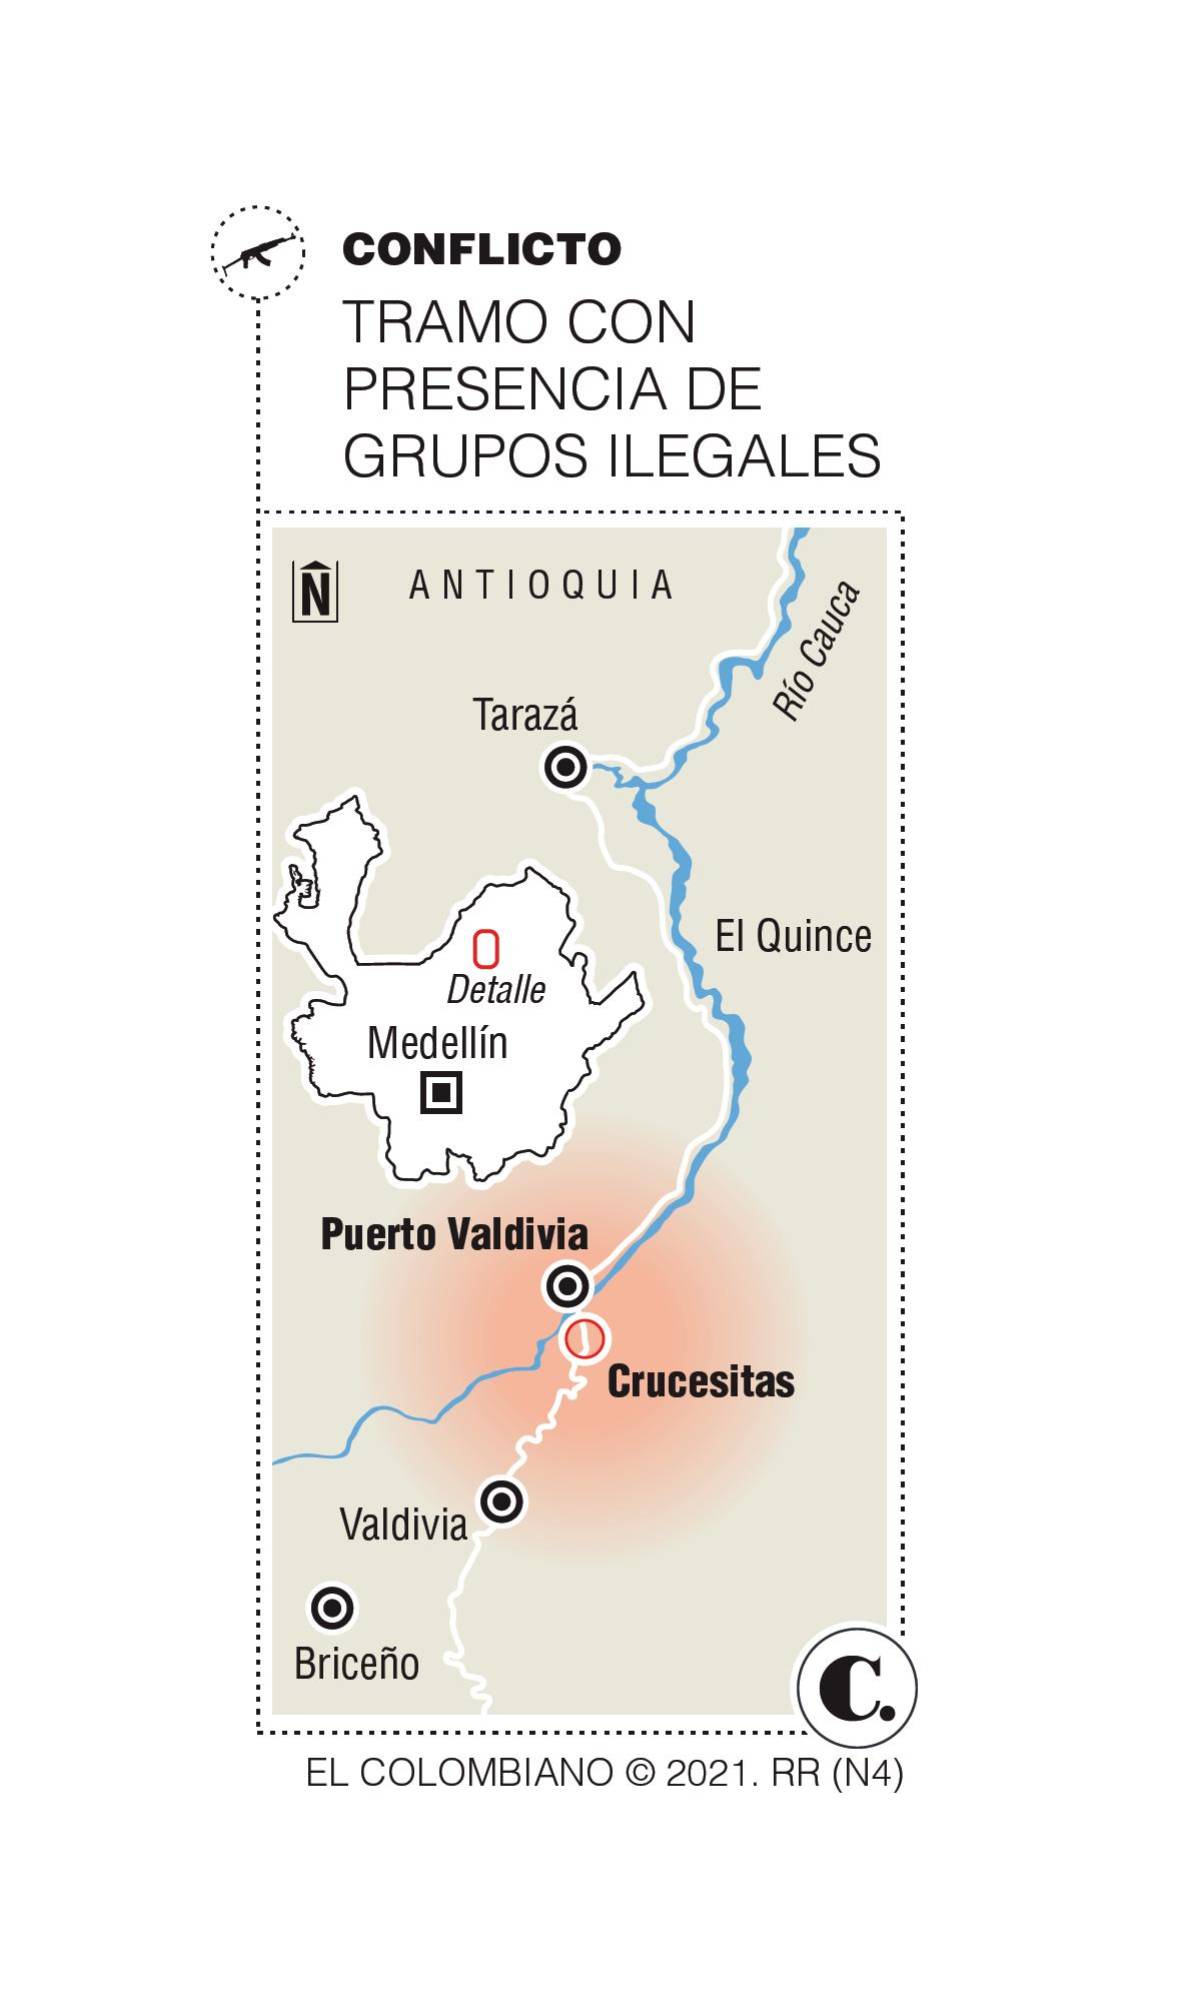 Valdivia y su serpiente asfaltada que seduce a los ilegales